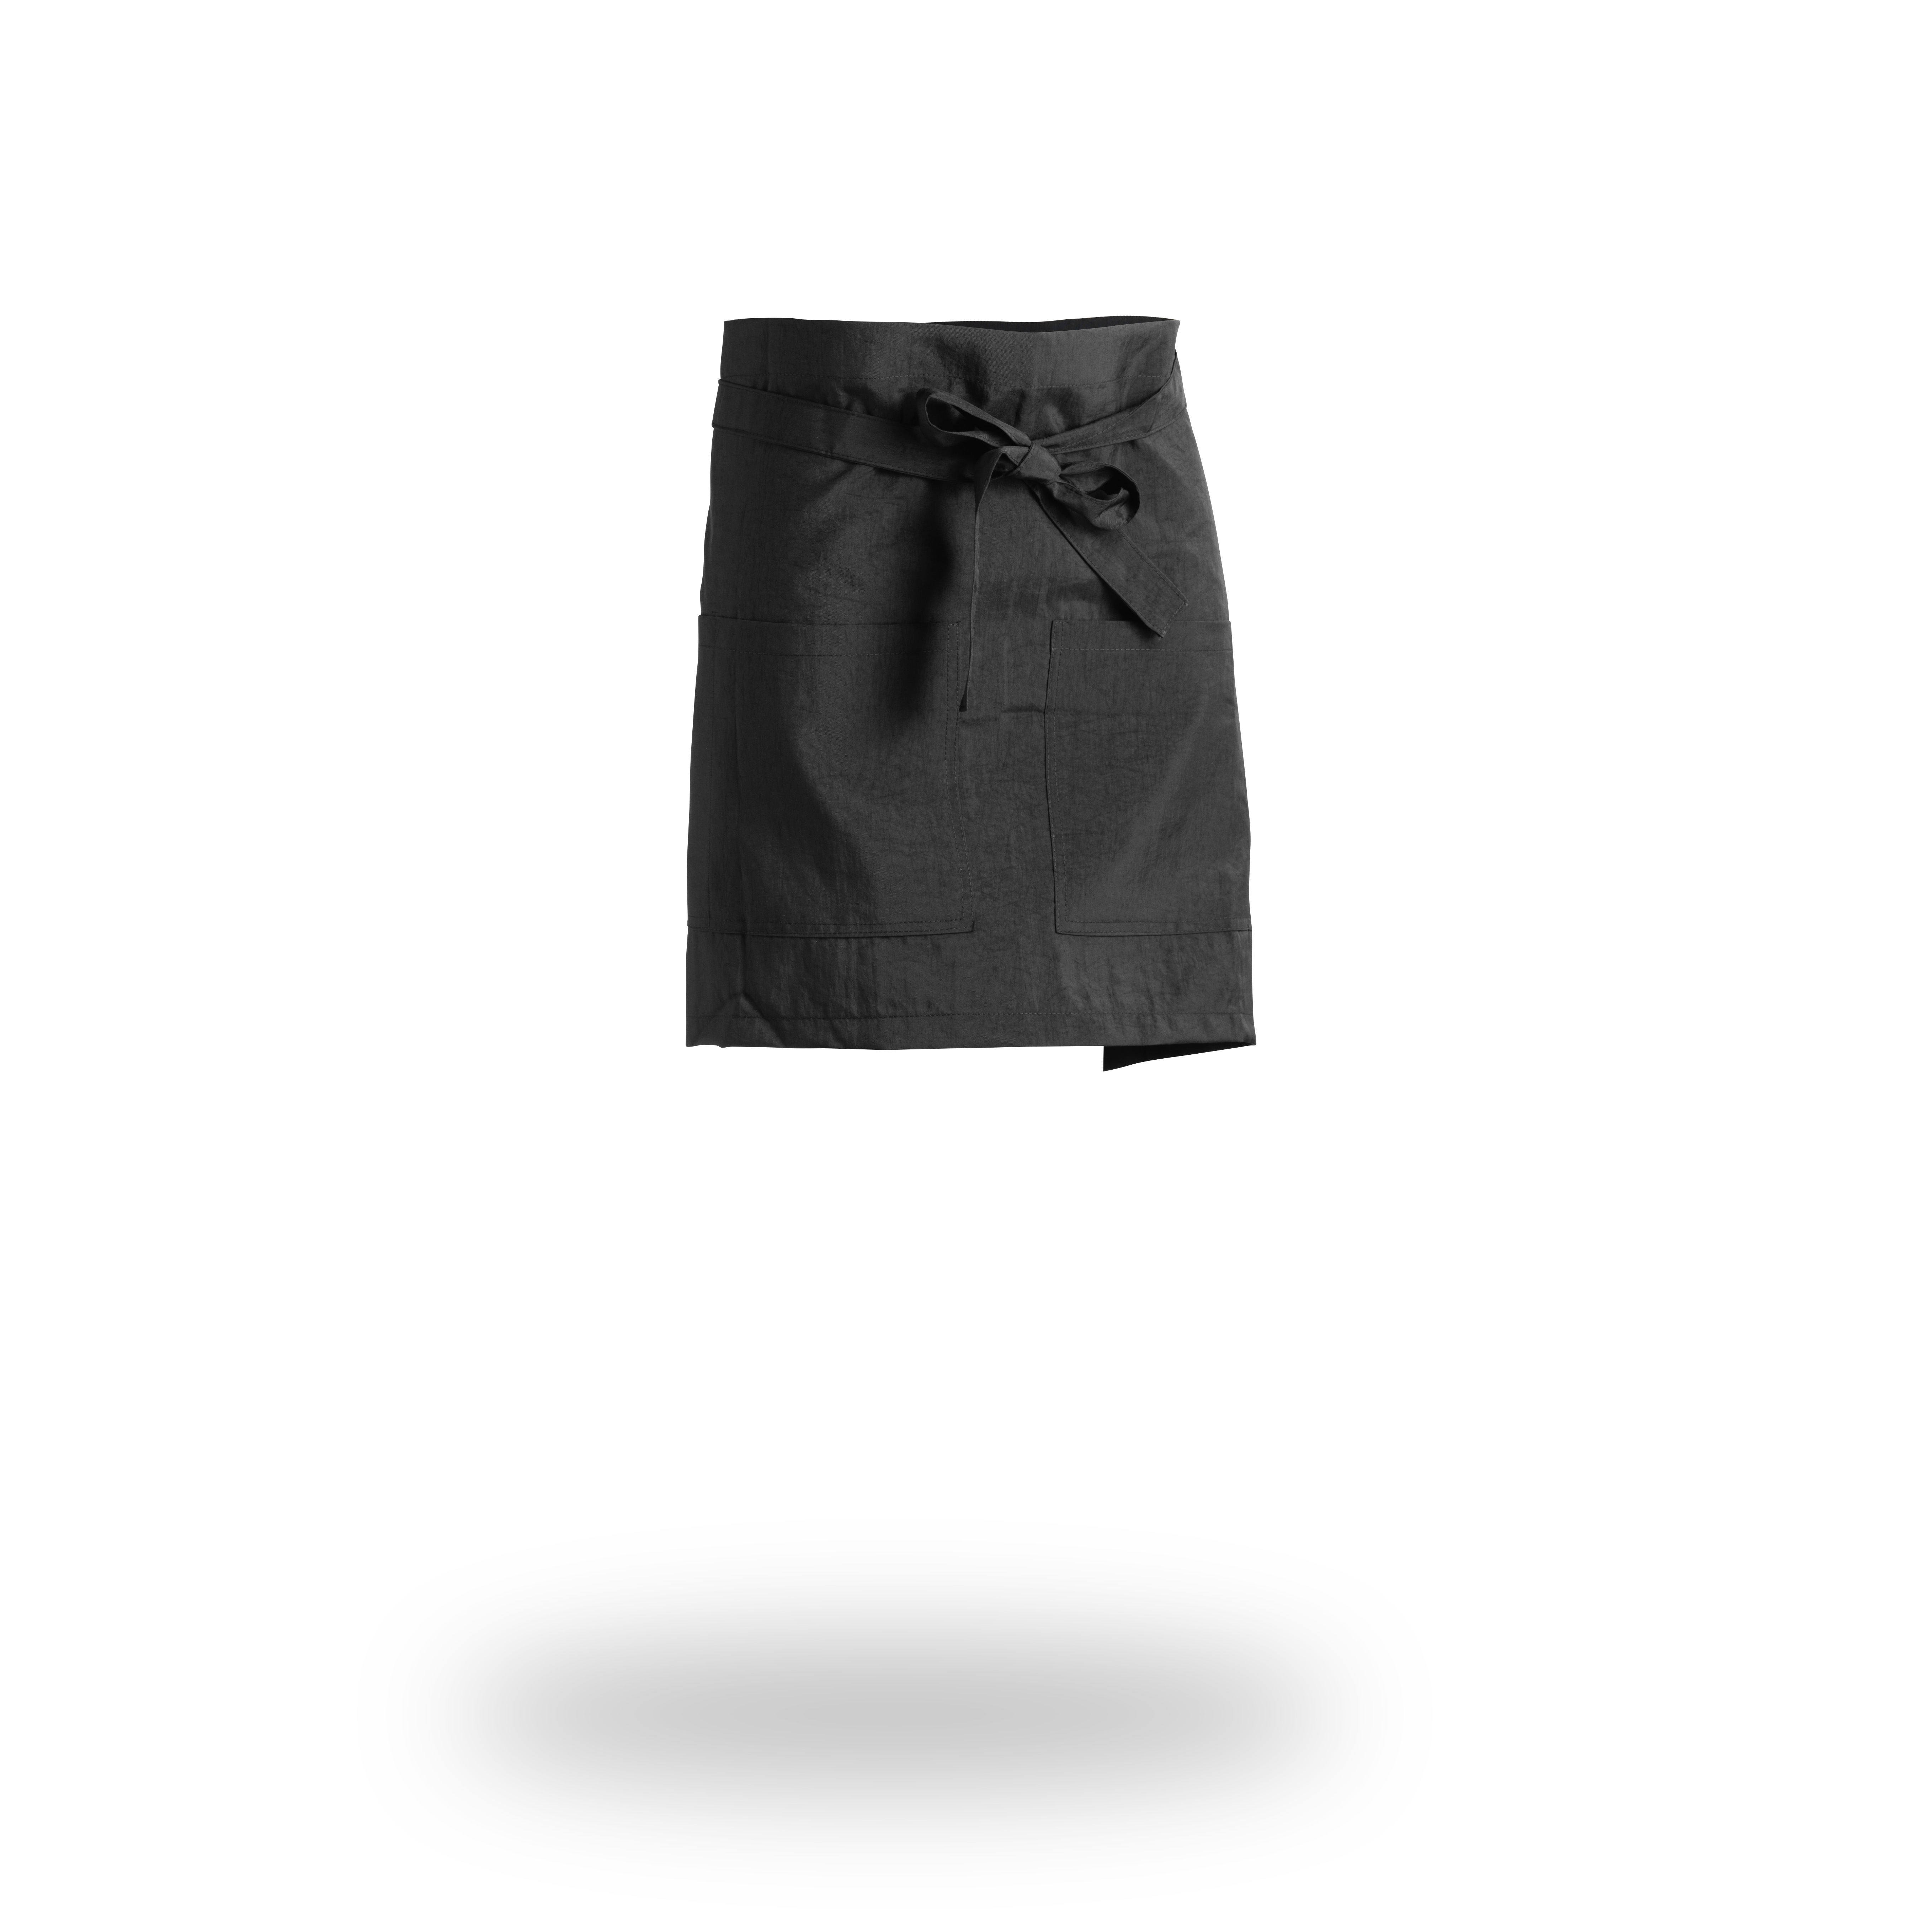 Wako Artisan mini apron 5818 - kadeřnická zástěra do pasu, univerzální velikost